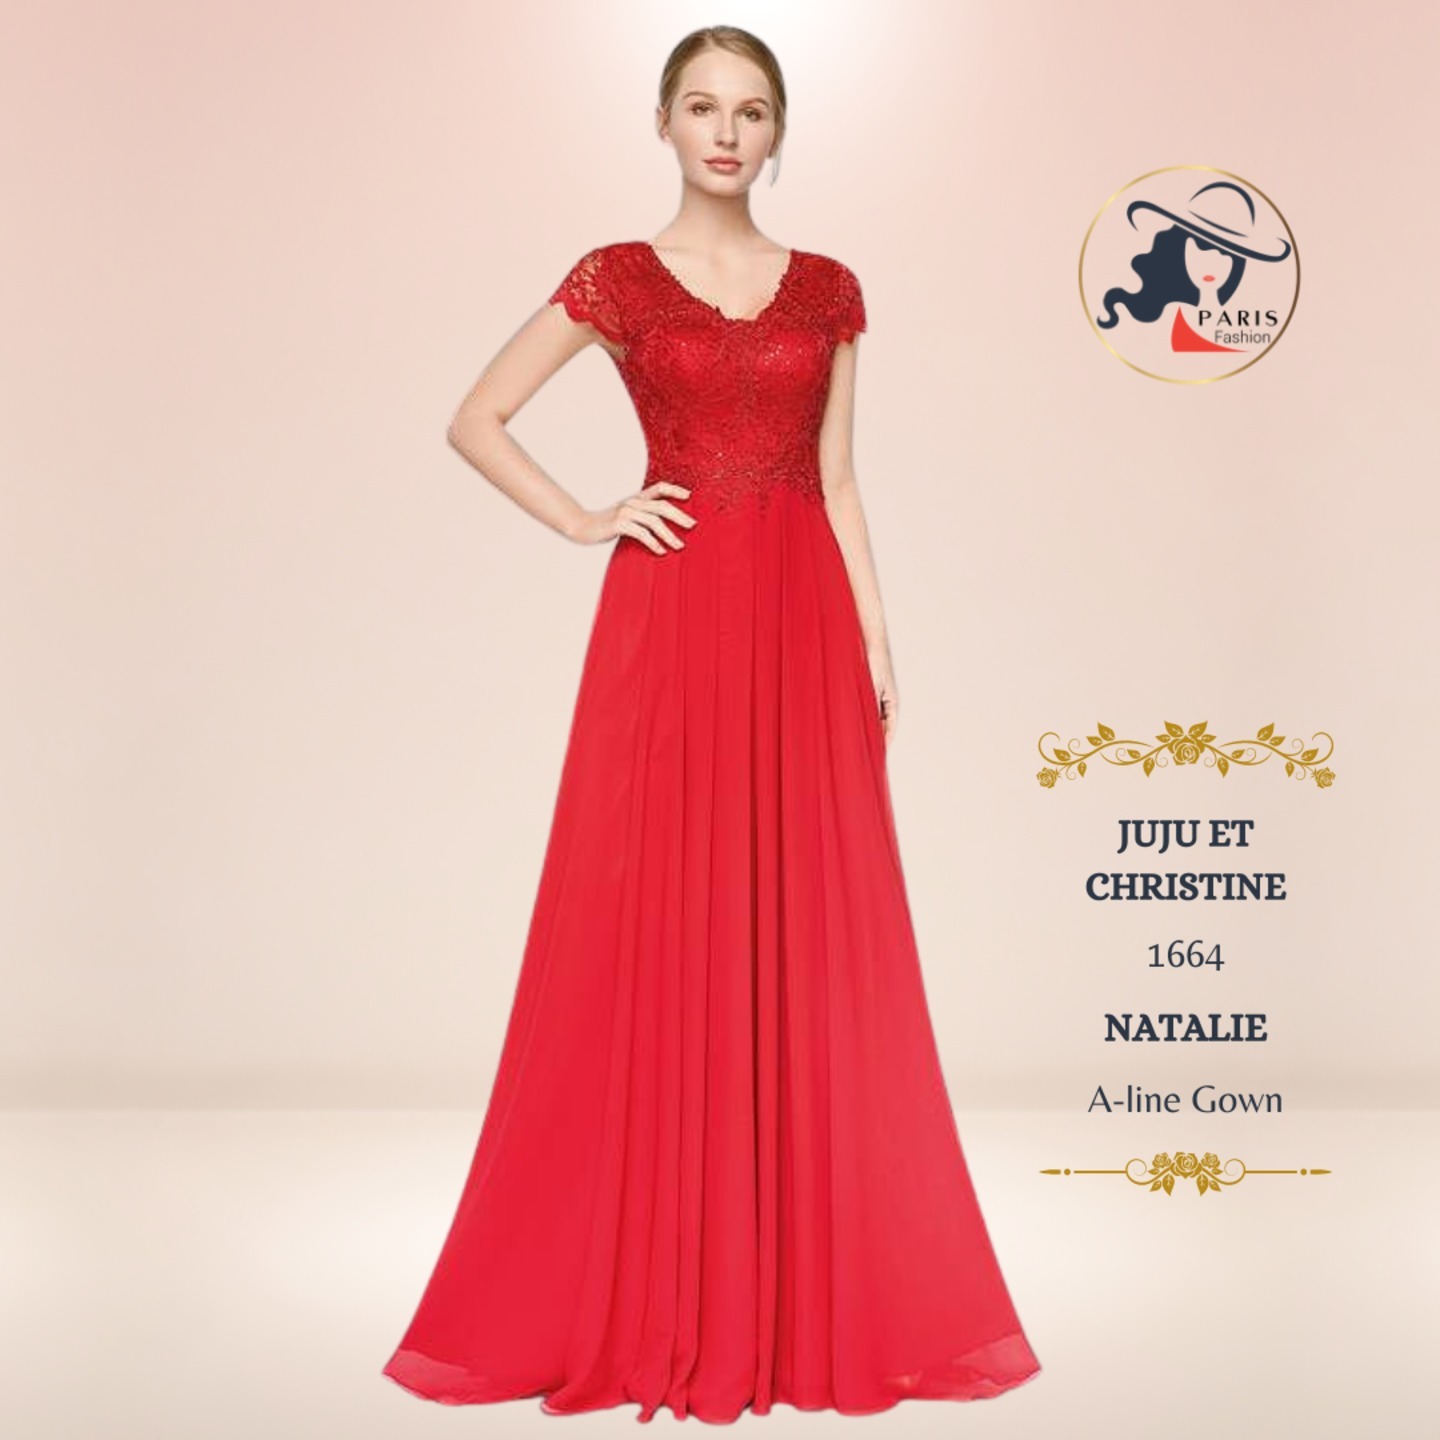 JUJU ET CHRISTINE PARIS 1664  NATALIE  A-line Gown